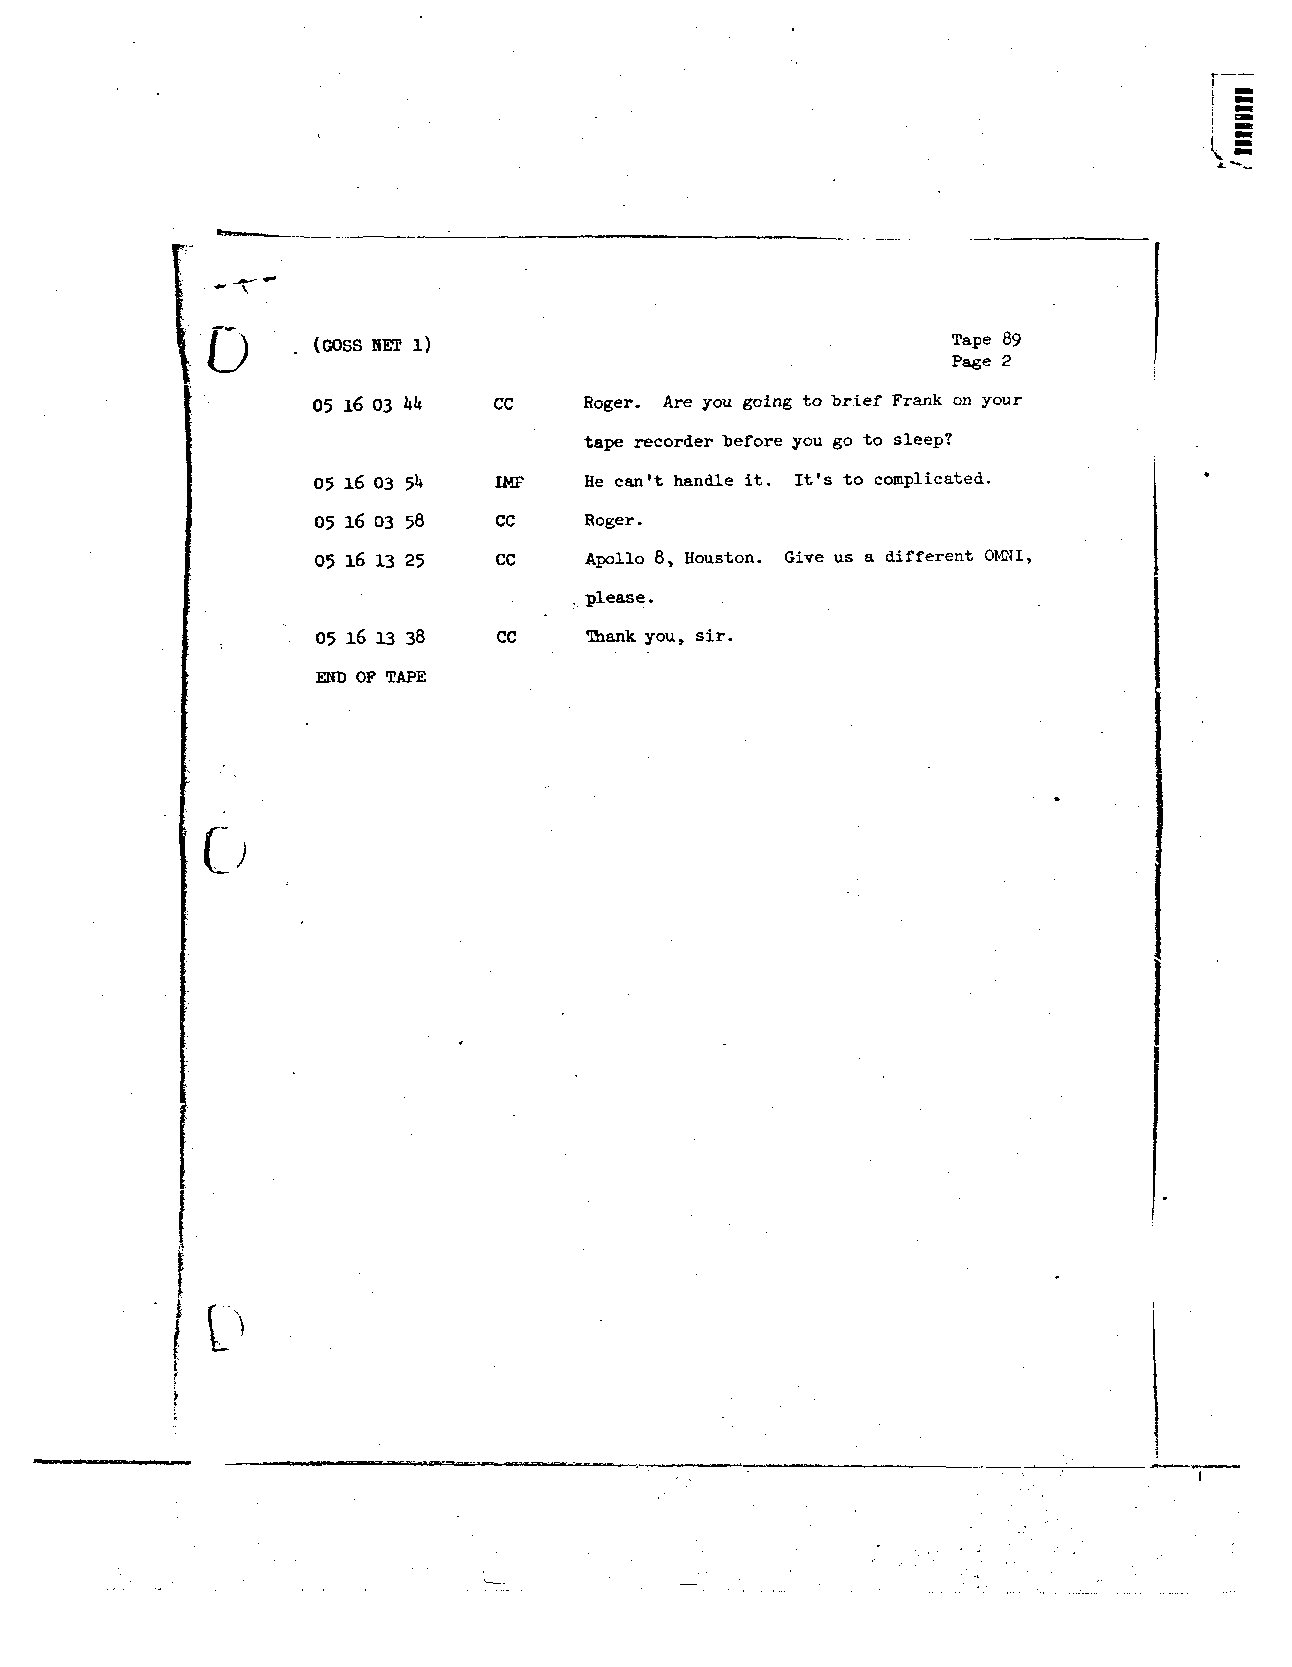 Page 723 of Apollo 8’s original transcript